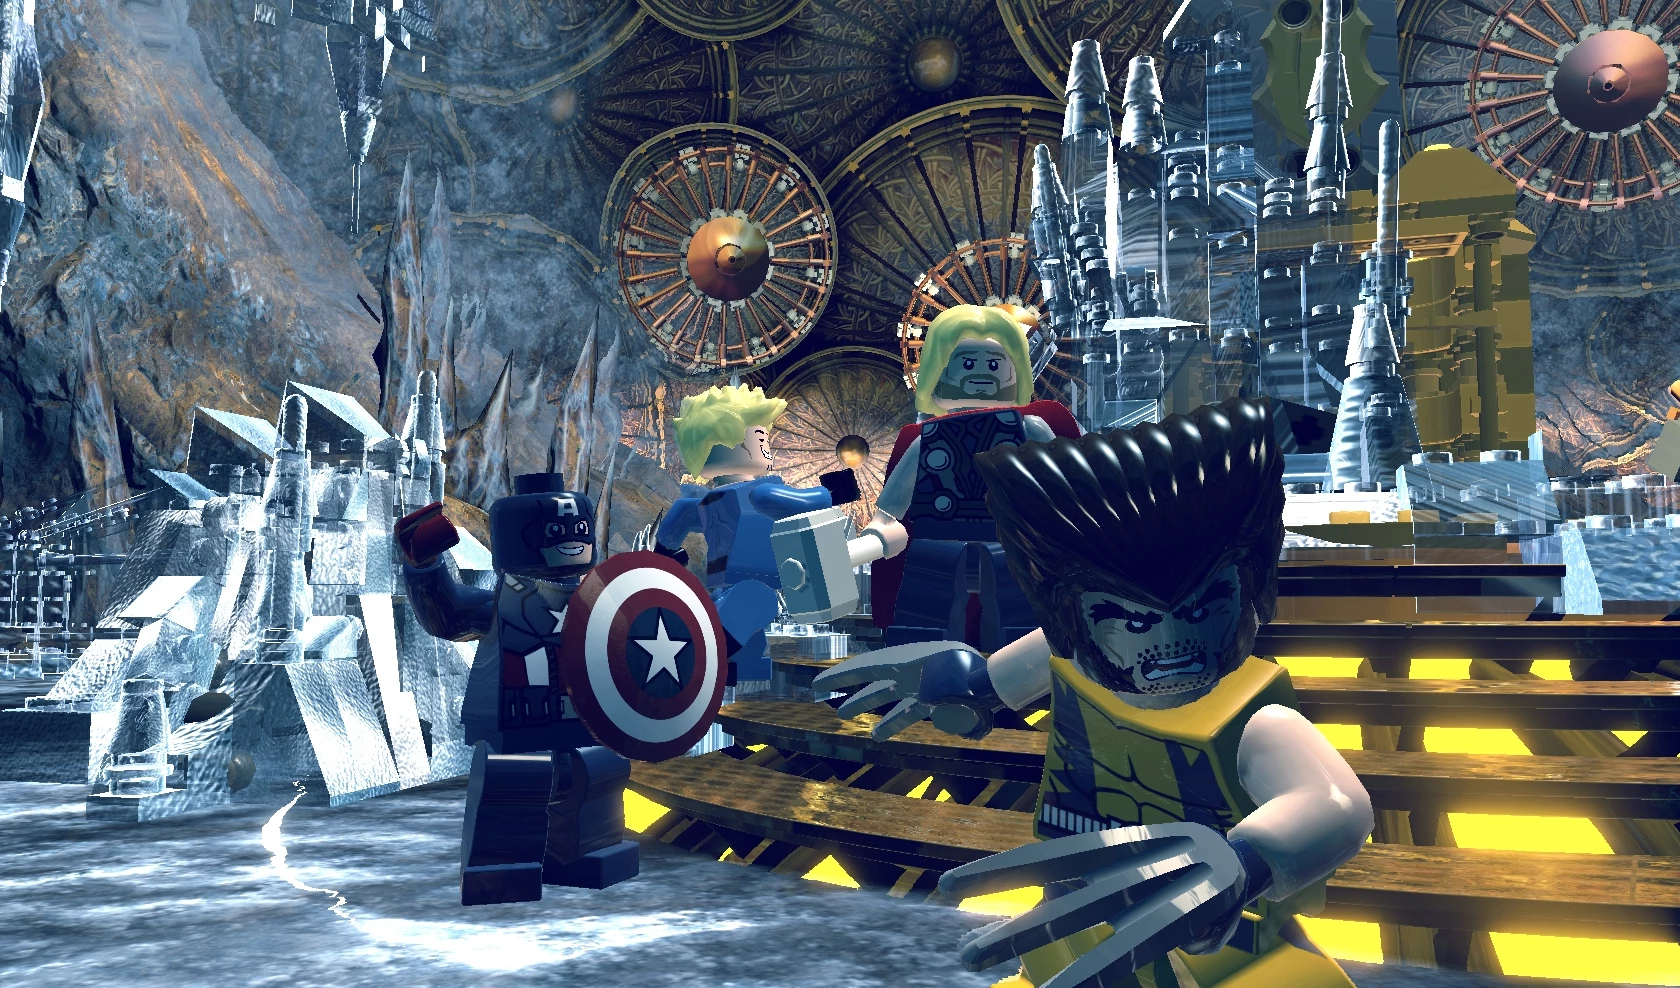 LEGO Marvel Super Heroes voor de PlayStation 4 kopen op nedgame.nl